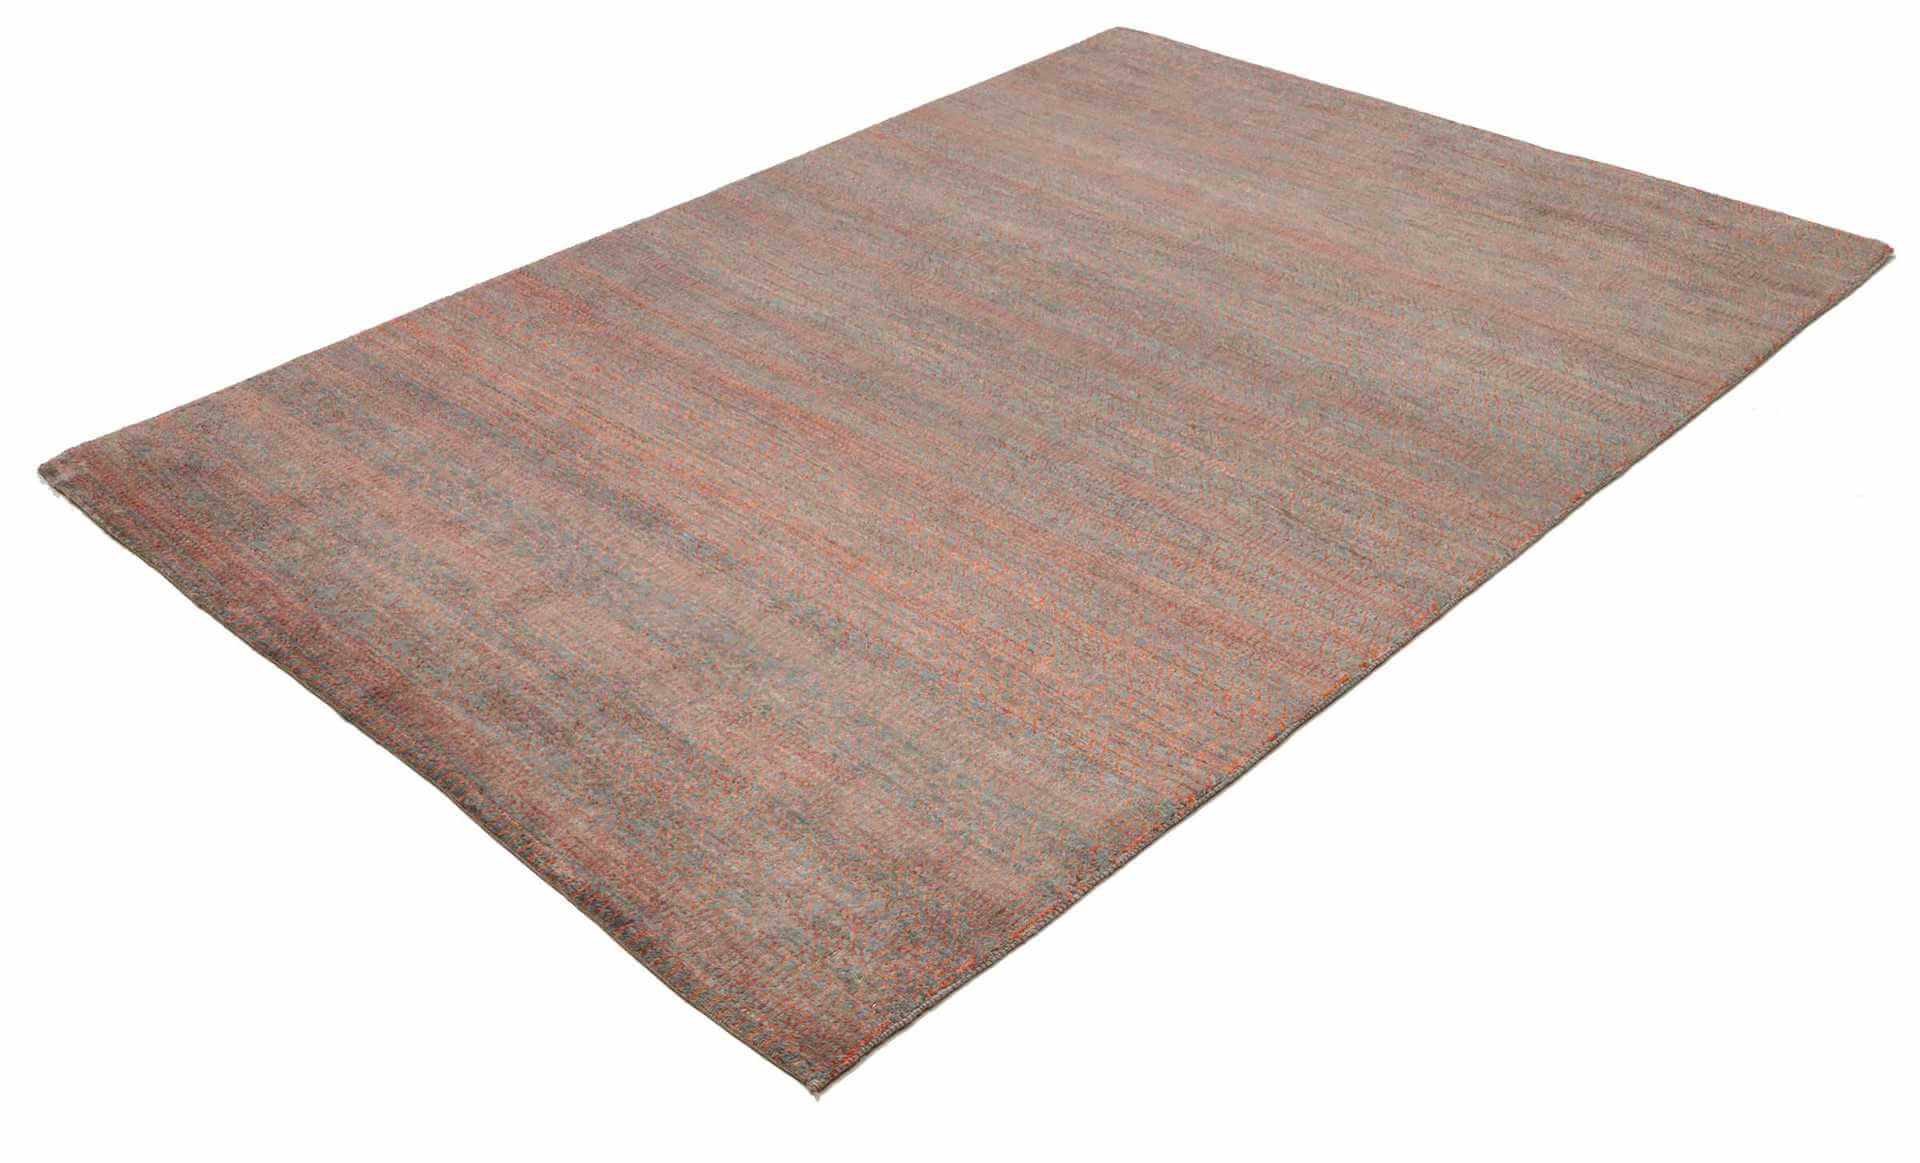 Afghan Teppich MD. Royal, handgeknüpft aus Schurwolle, grau/rost, 152 x 213 cm, Schrägansicht